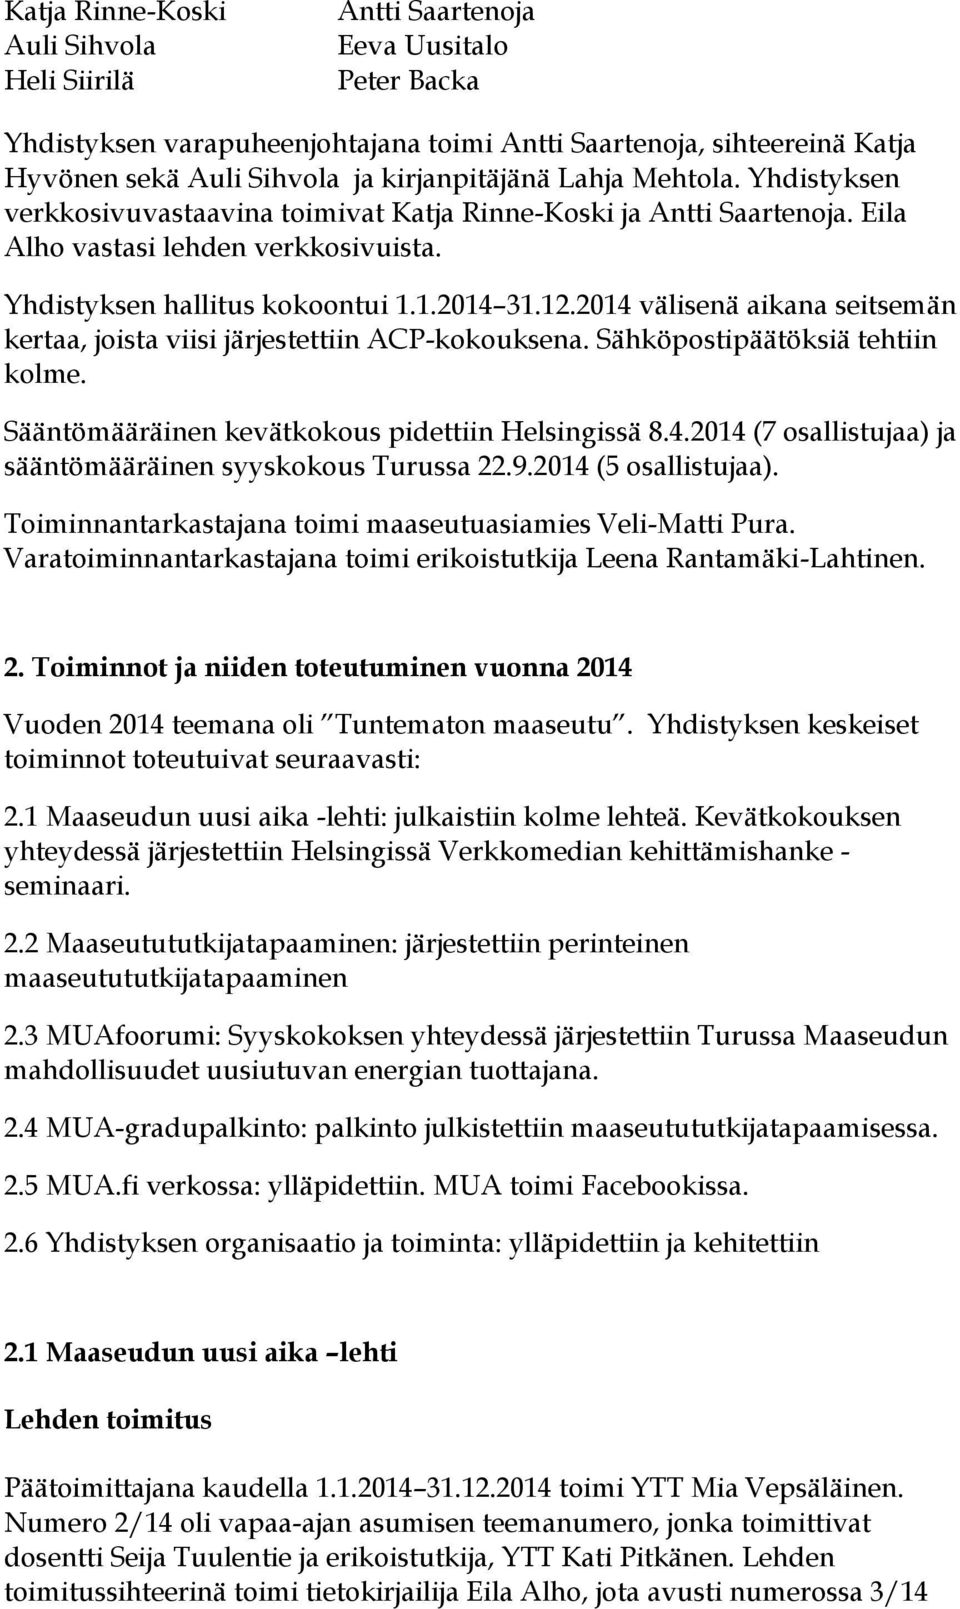 2014 välisenä aikana seitsemän kertaa, joista viisi järjestettiin ACP-kokouksena. Sähköpostipäätöksiä tehtiin kolme. Sääntömääräinen kevätkokous pidettiin Helsingissä 8.4.2014 (7 osallistujaa) ja sääntömääräinen syyskokous Turussa 22.